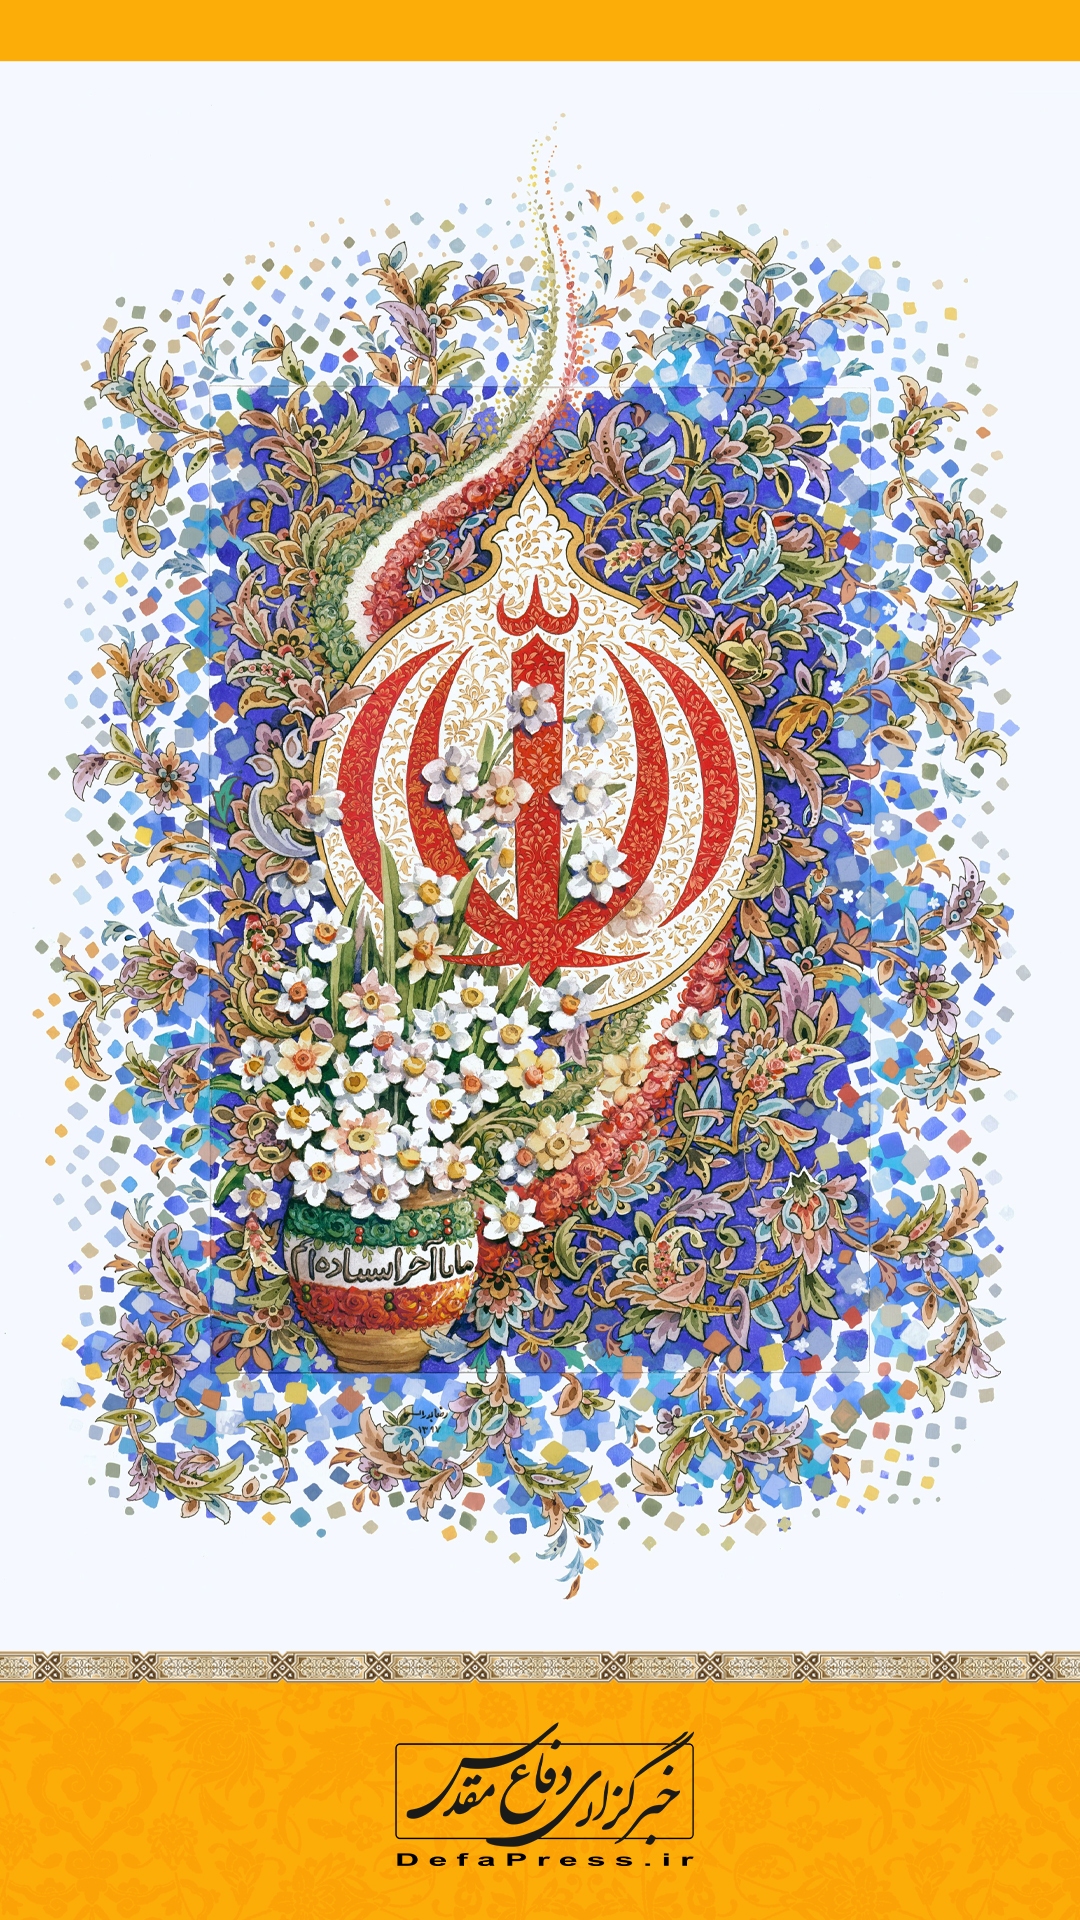 ایران استوار، ۴۴ سال افتخار (۹)